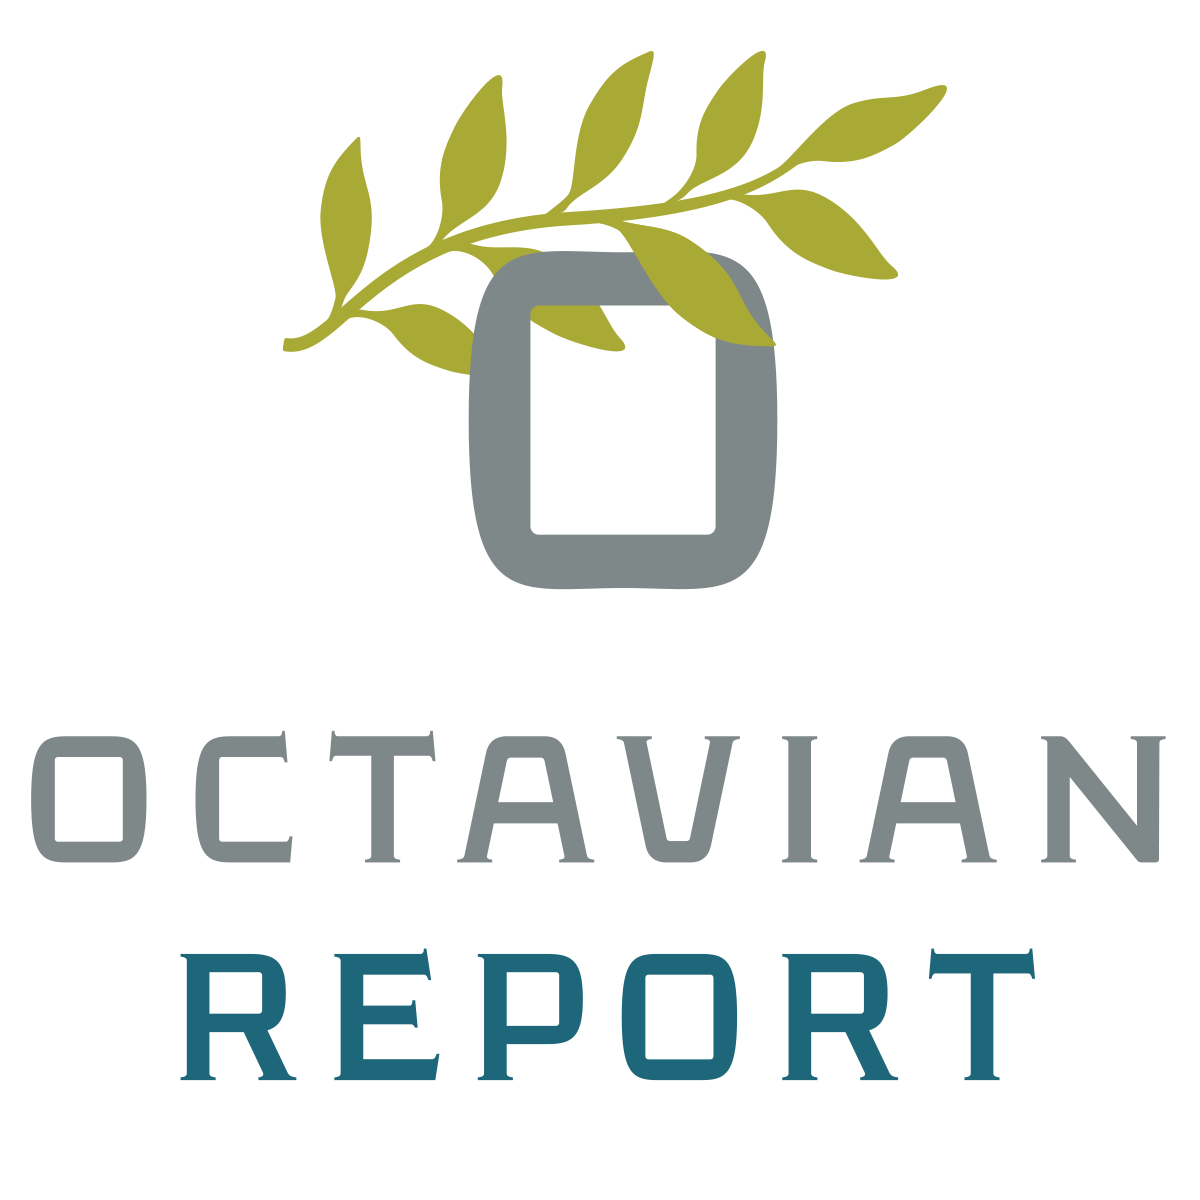 The Octavian Report